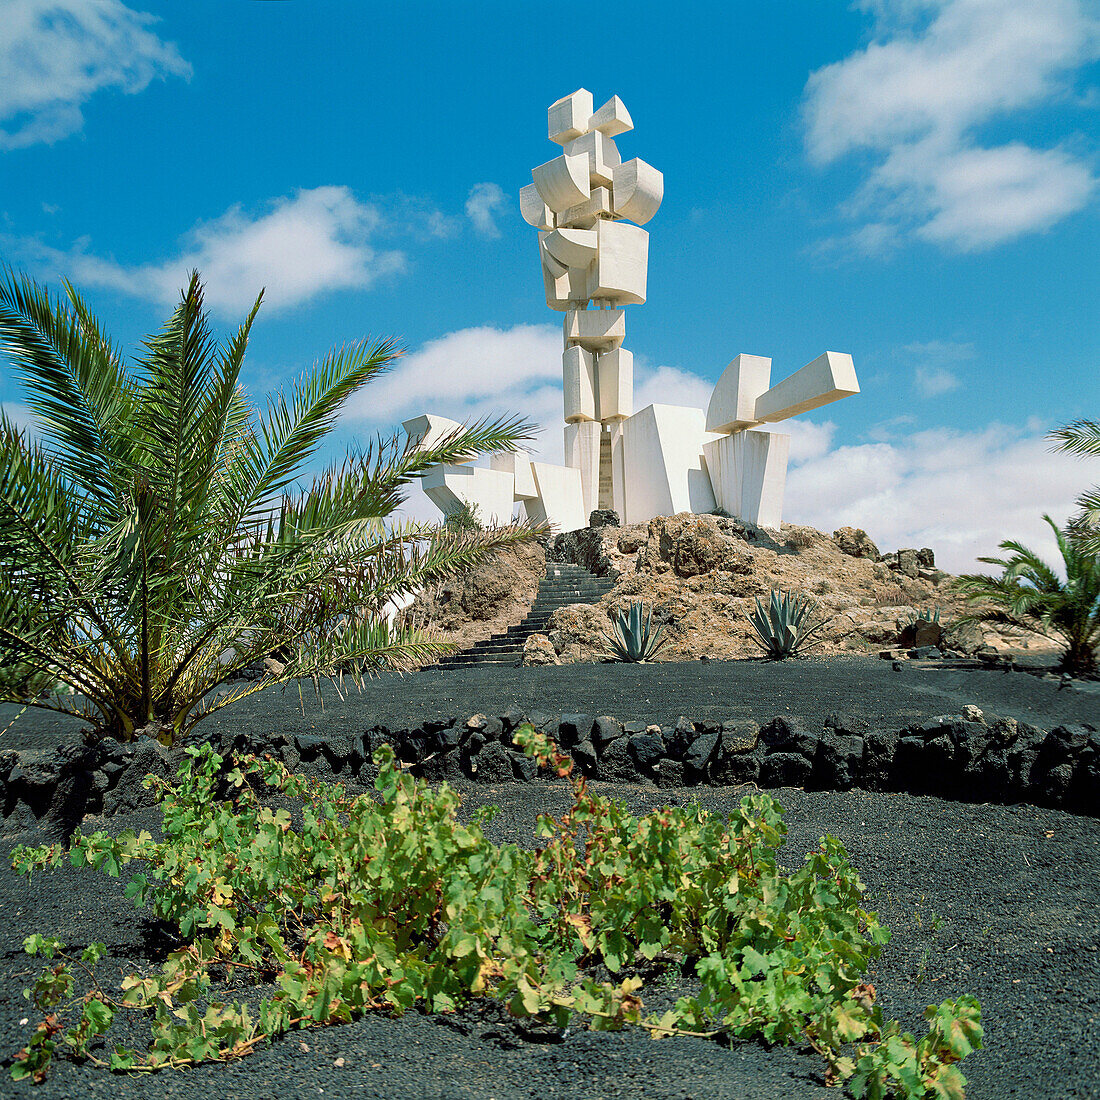 Monumento al Campesino (Monument to the Peasant), by Lanzarote artist César Manrique, Lanzarote, Canary Islands, Spain